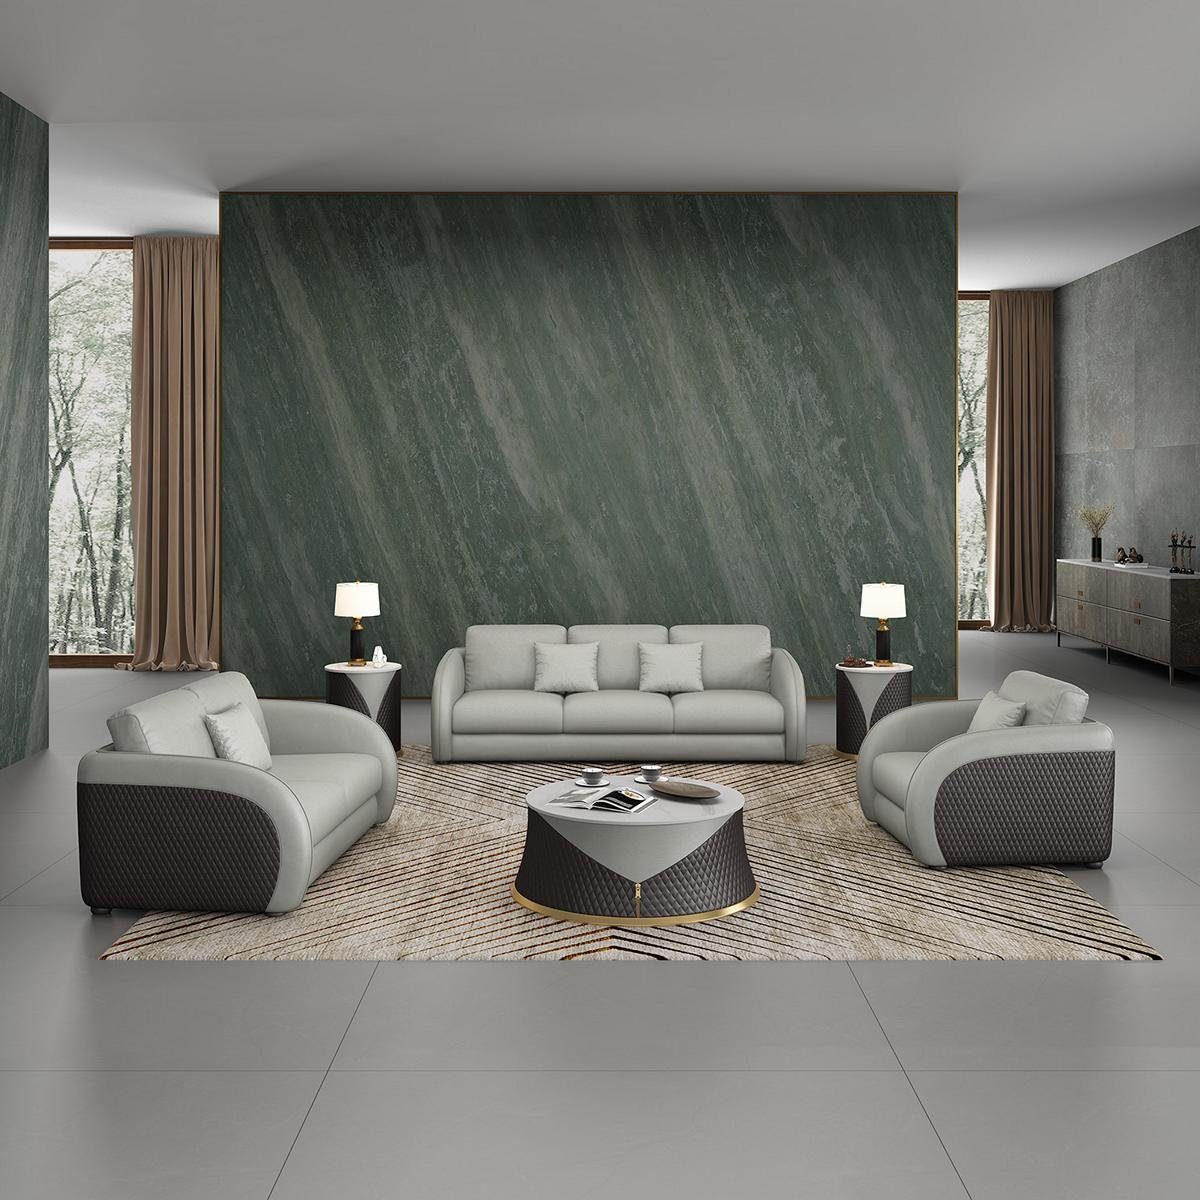 JVmoebel Wohnzimmer-Set, Sofagarnitur 3 2 1 Sitzer Set Design Sofa Polster Couchen Couch Weiß/Silber | Wohnwände